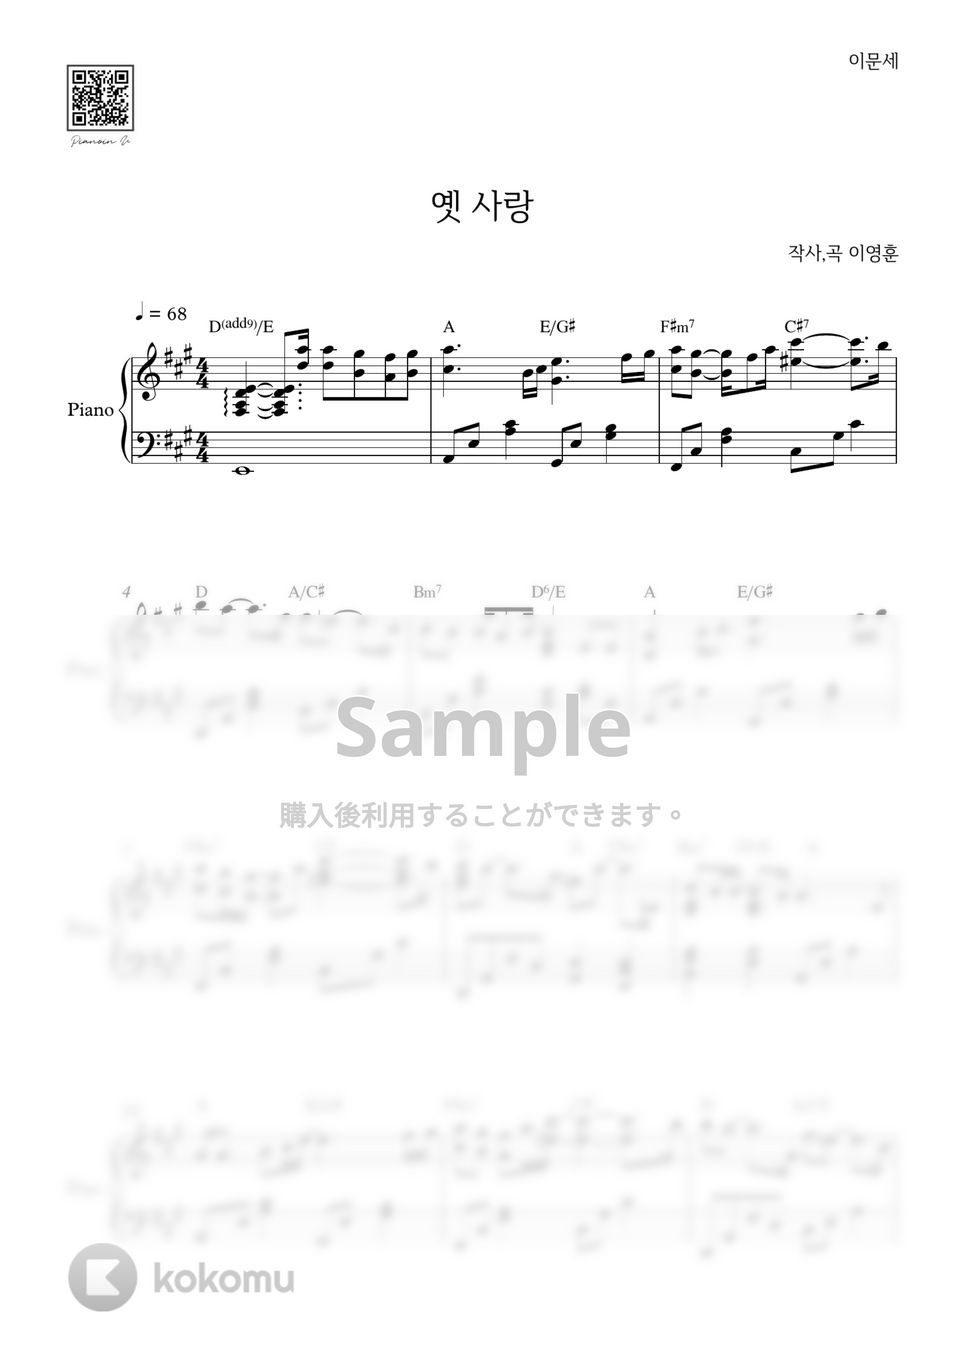 イ・ムンセ - 昔の恋 by PIANOiNU